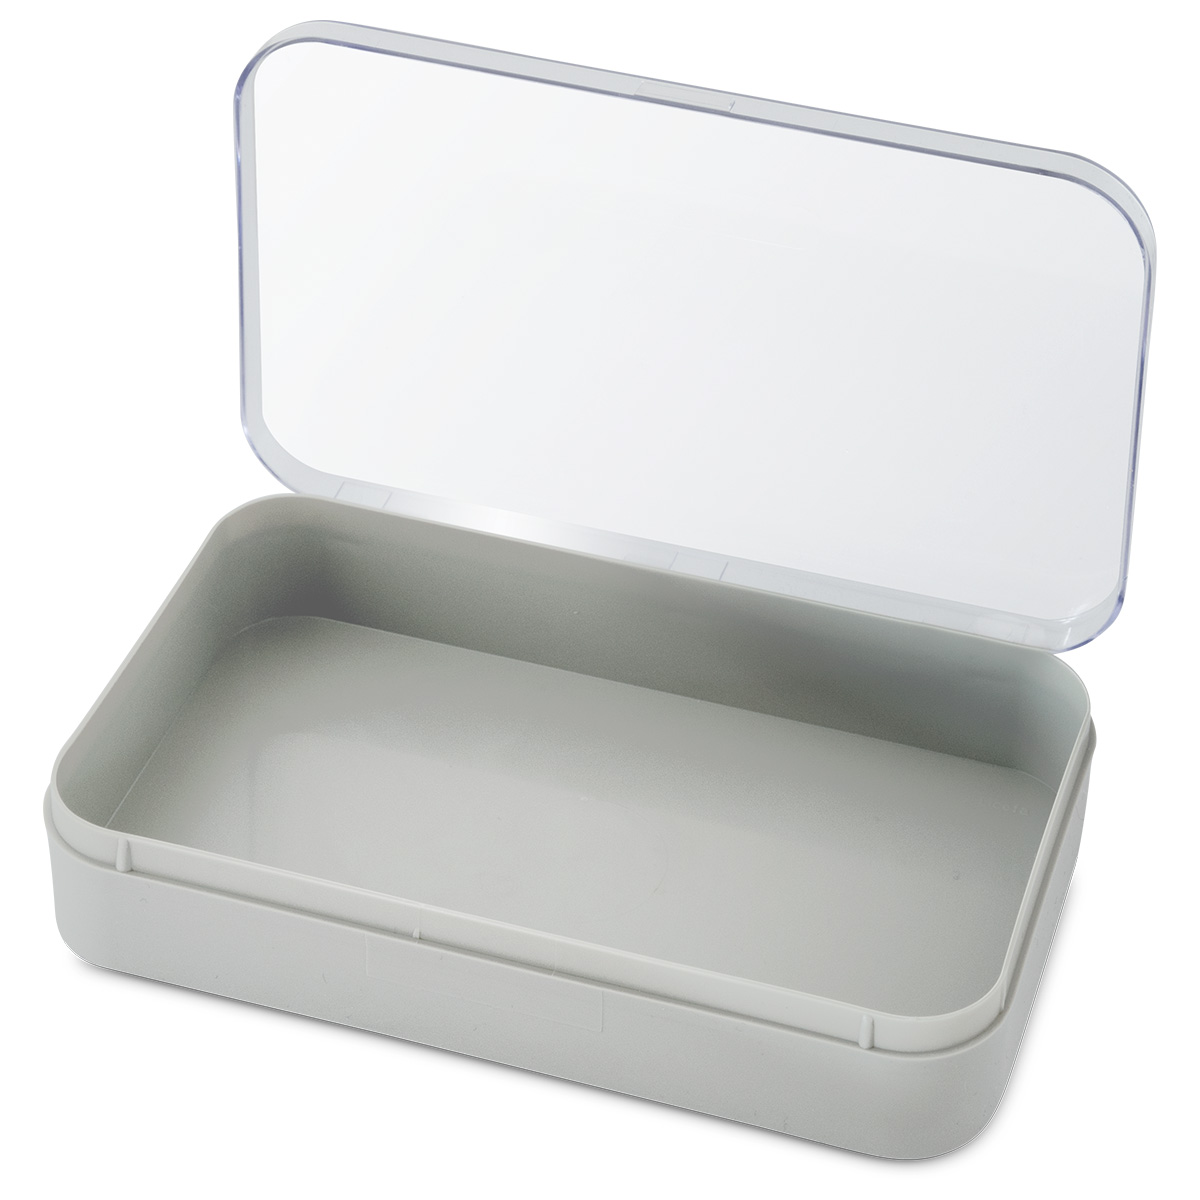 Boîte d'assortiment, 1 case, en matière synthétique gris, couvercle transparent, 35 x 190 x 110 mm